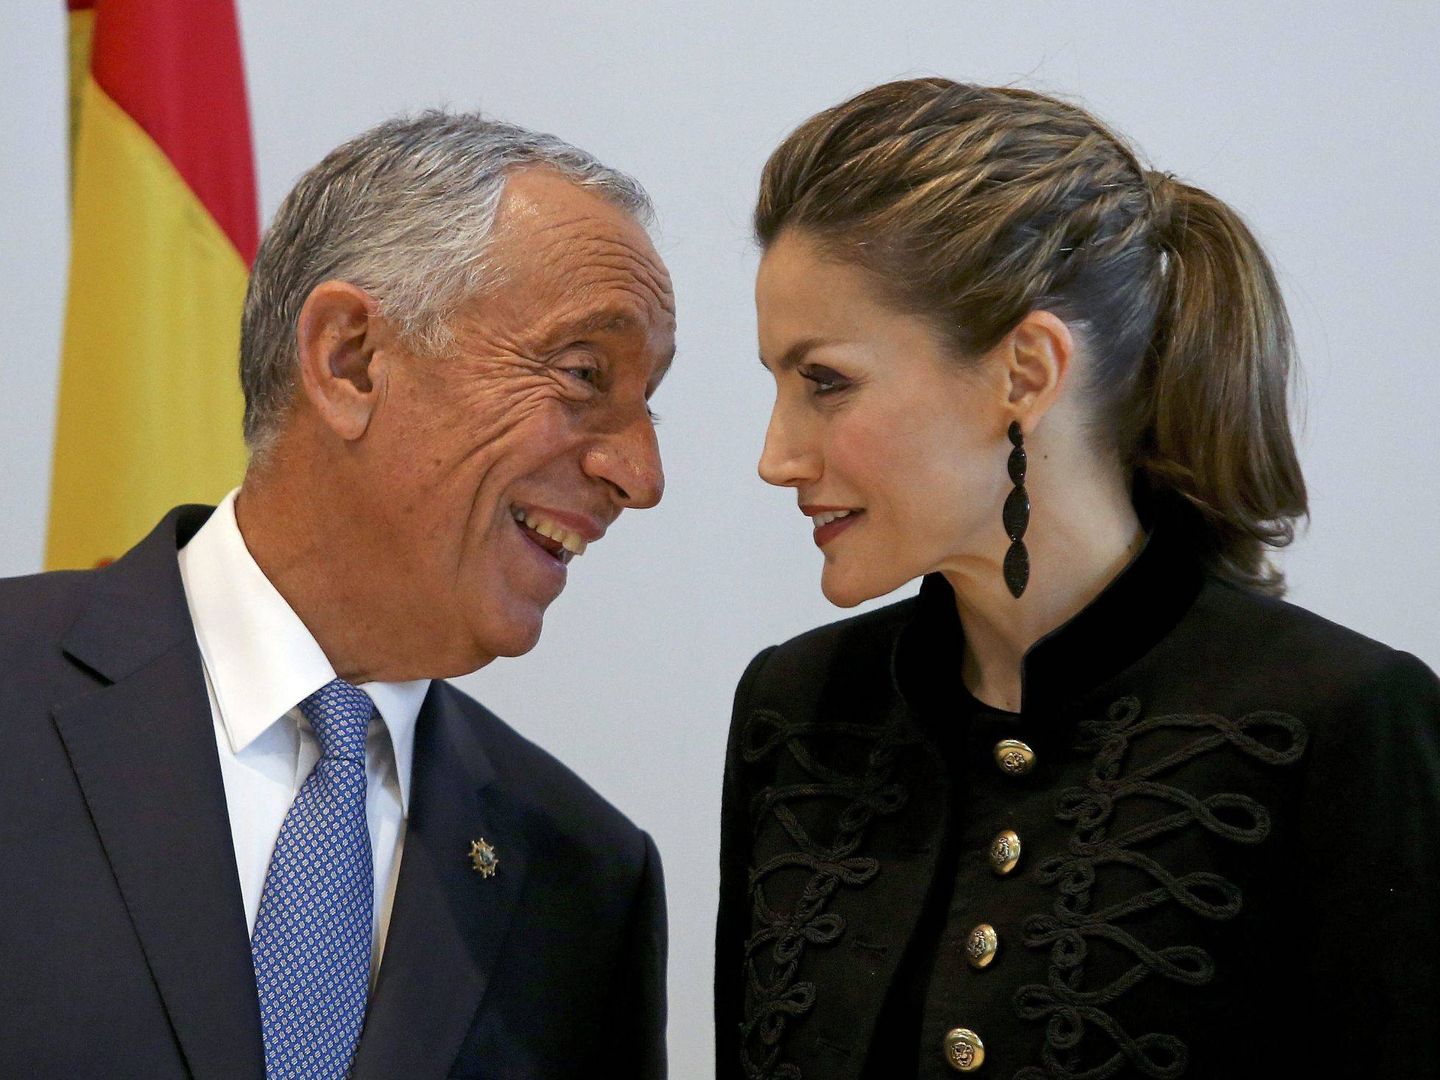 La reina Letizia, junto a Marcelo Rebelo de Sousa durante una visita a Portugal en 2016. (EFE)